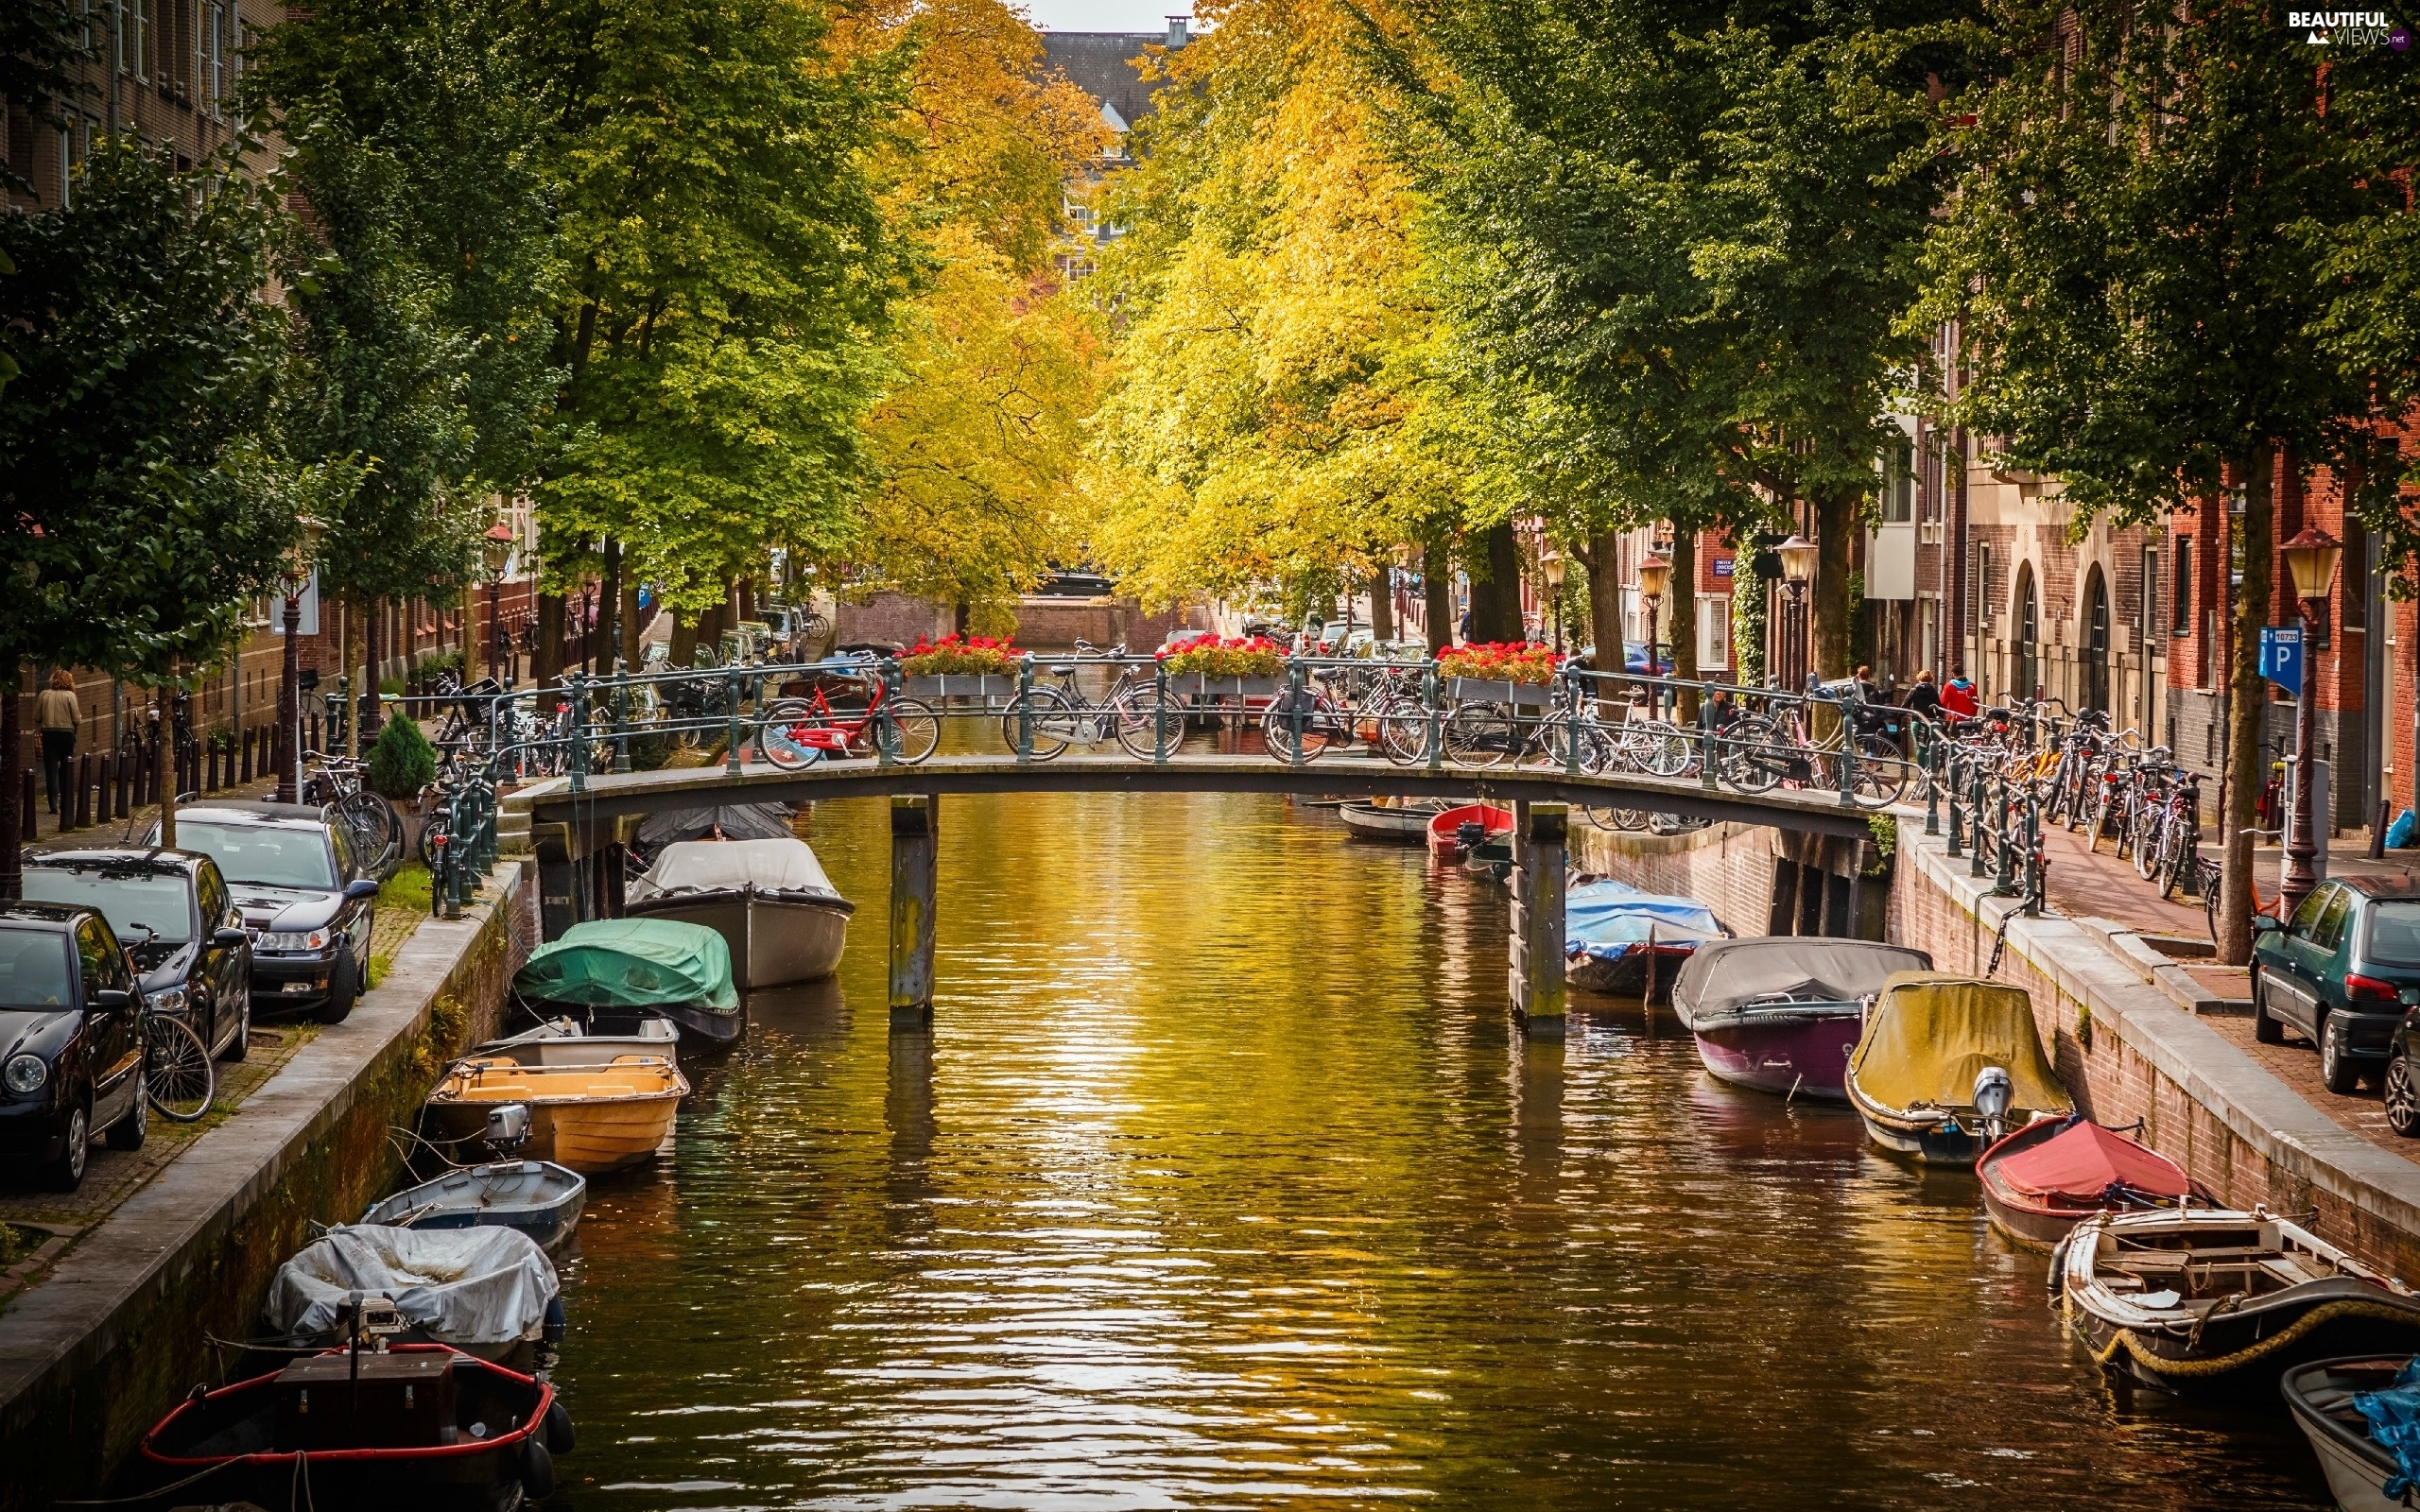 Pranverë në Amsterdamn – 4 Ditë – €399/Person